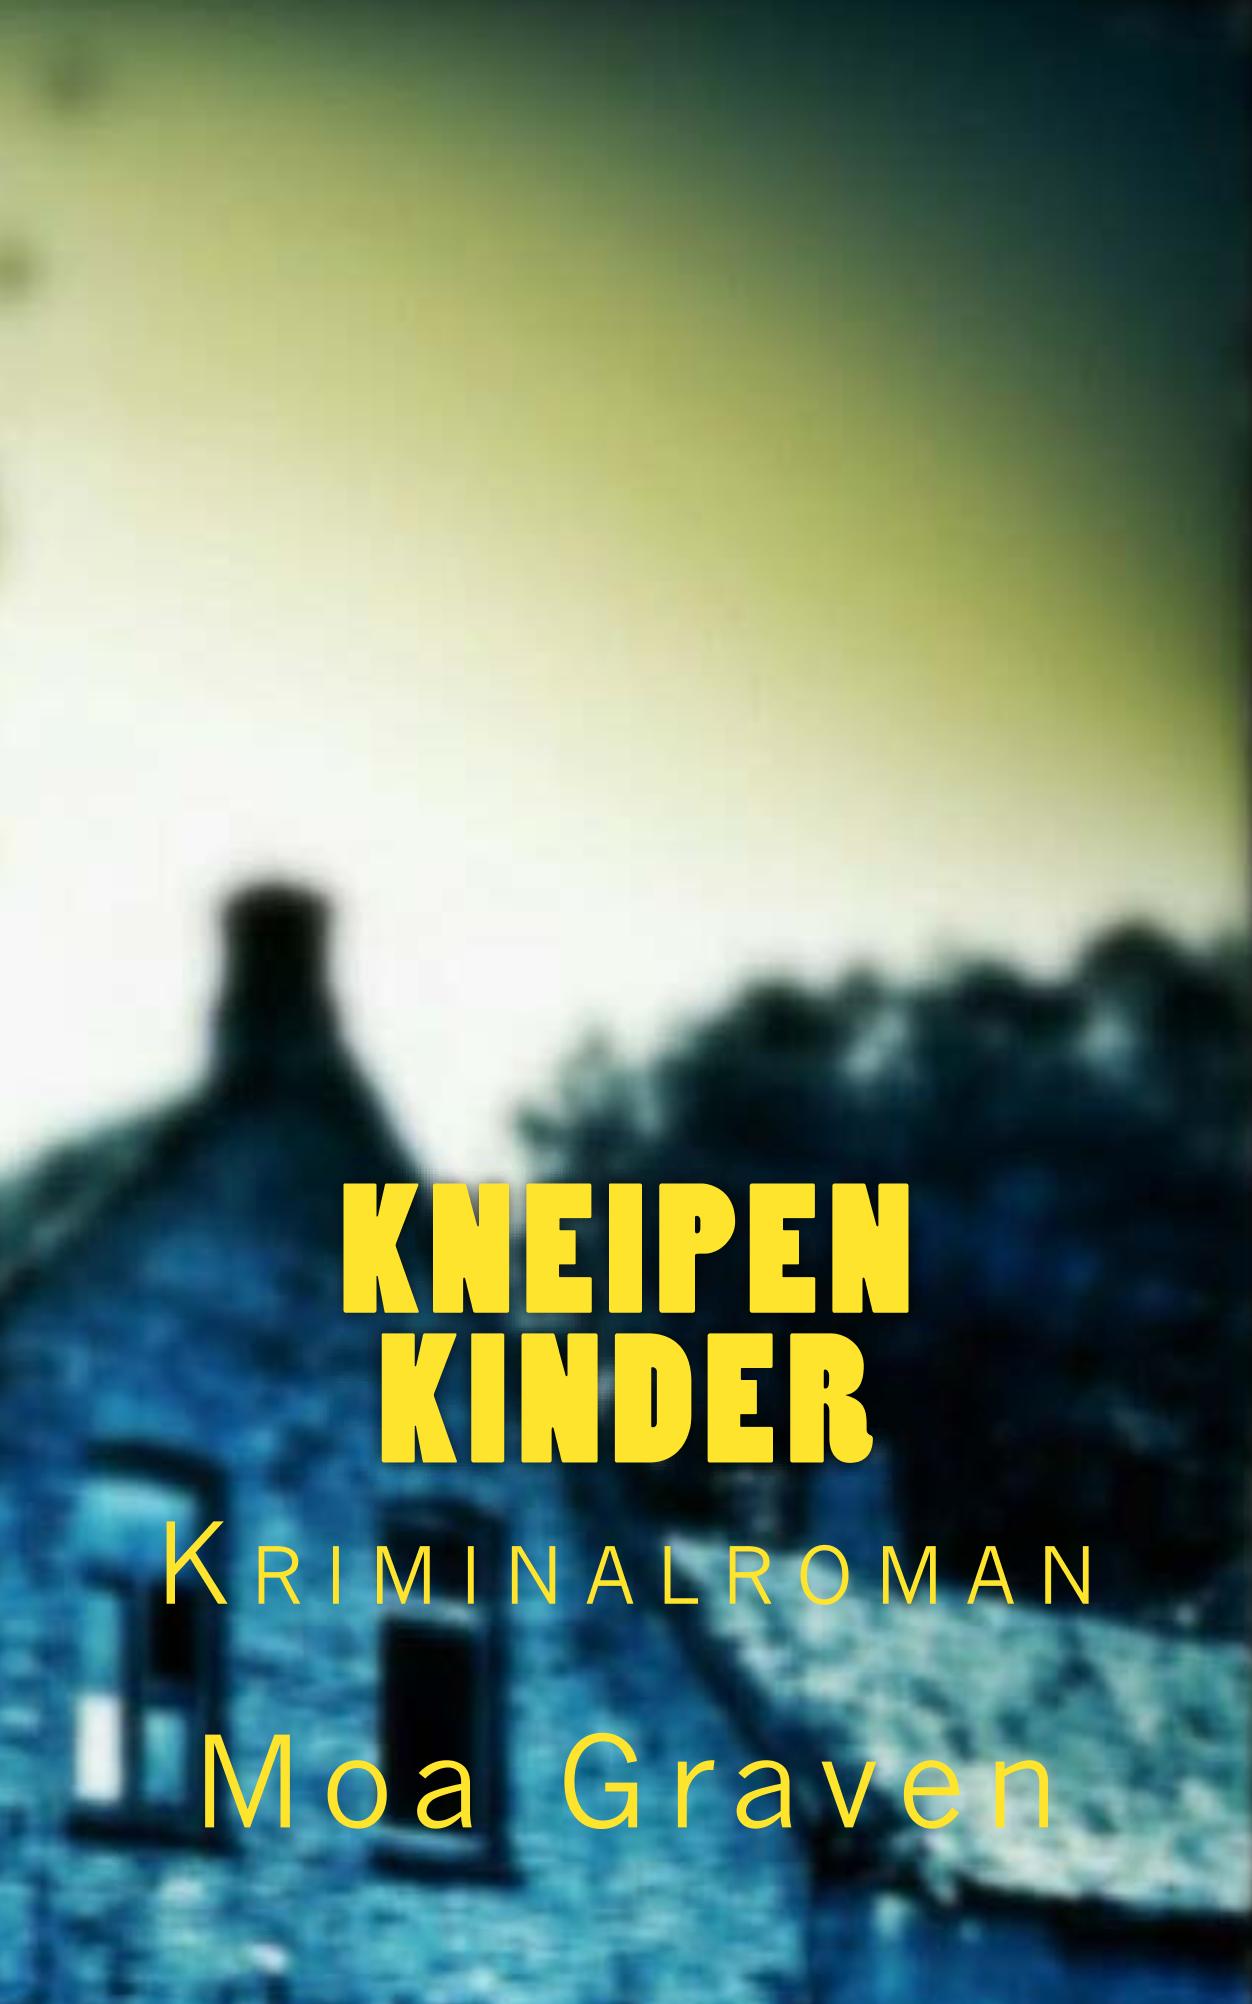 Kneipenkinder_Cover_for_Kindle_Kopie.jpg